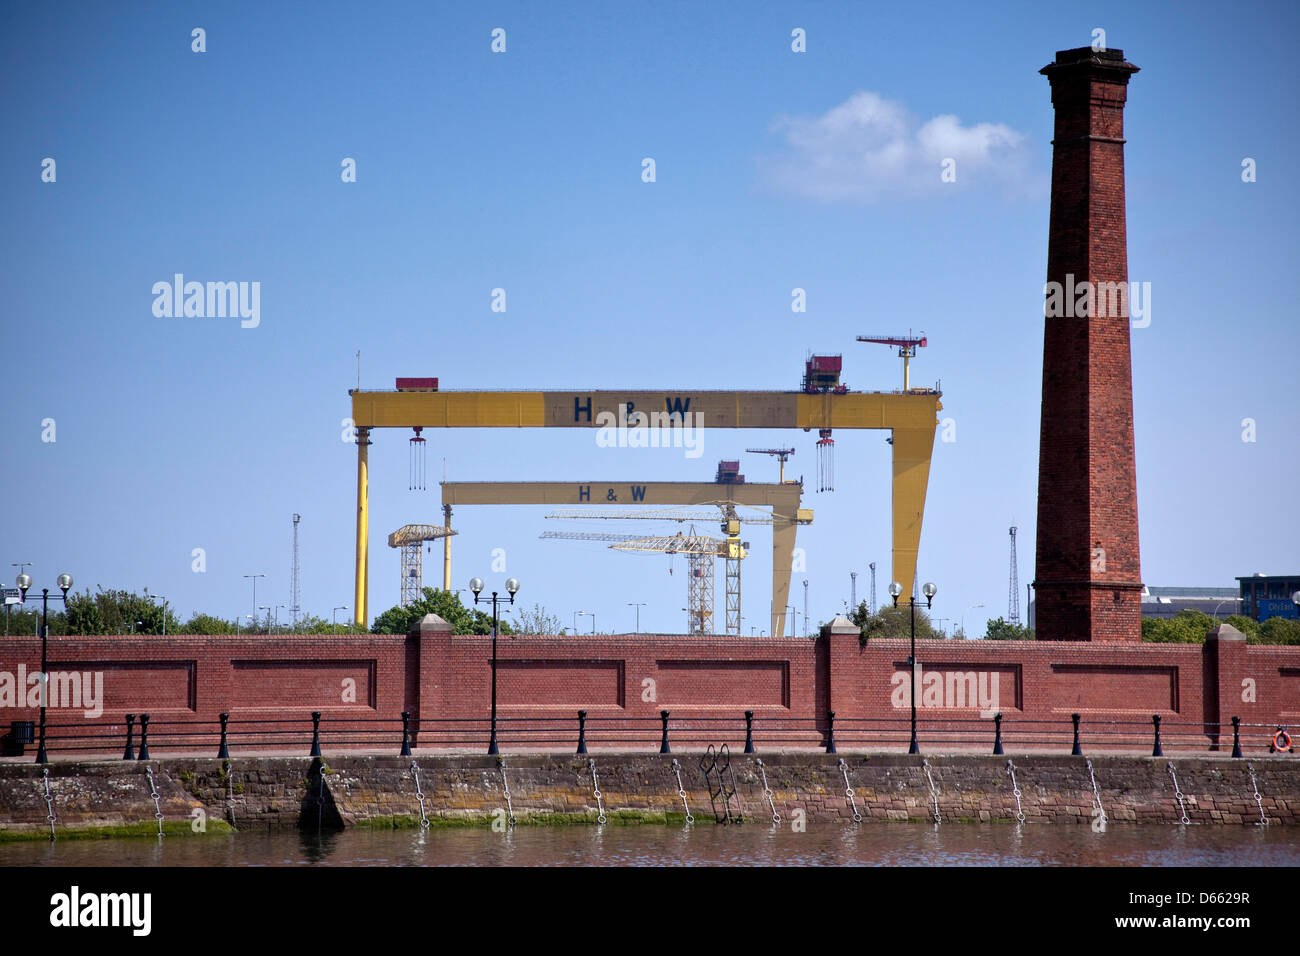 Harland & Wolff Portalkräne, Samson und Goliath, Belfast, Nordirland Stockfoto